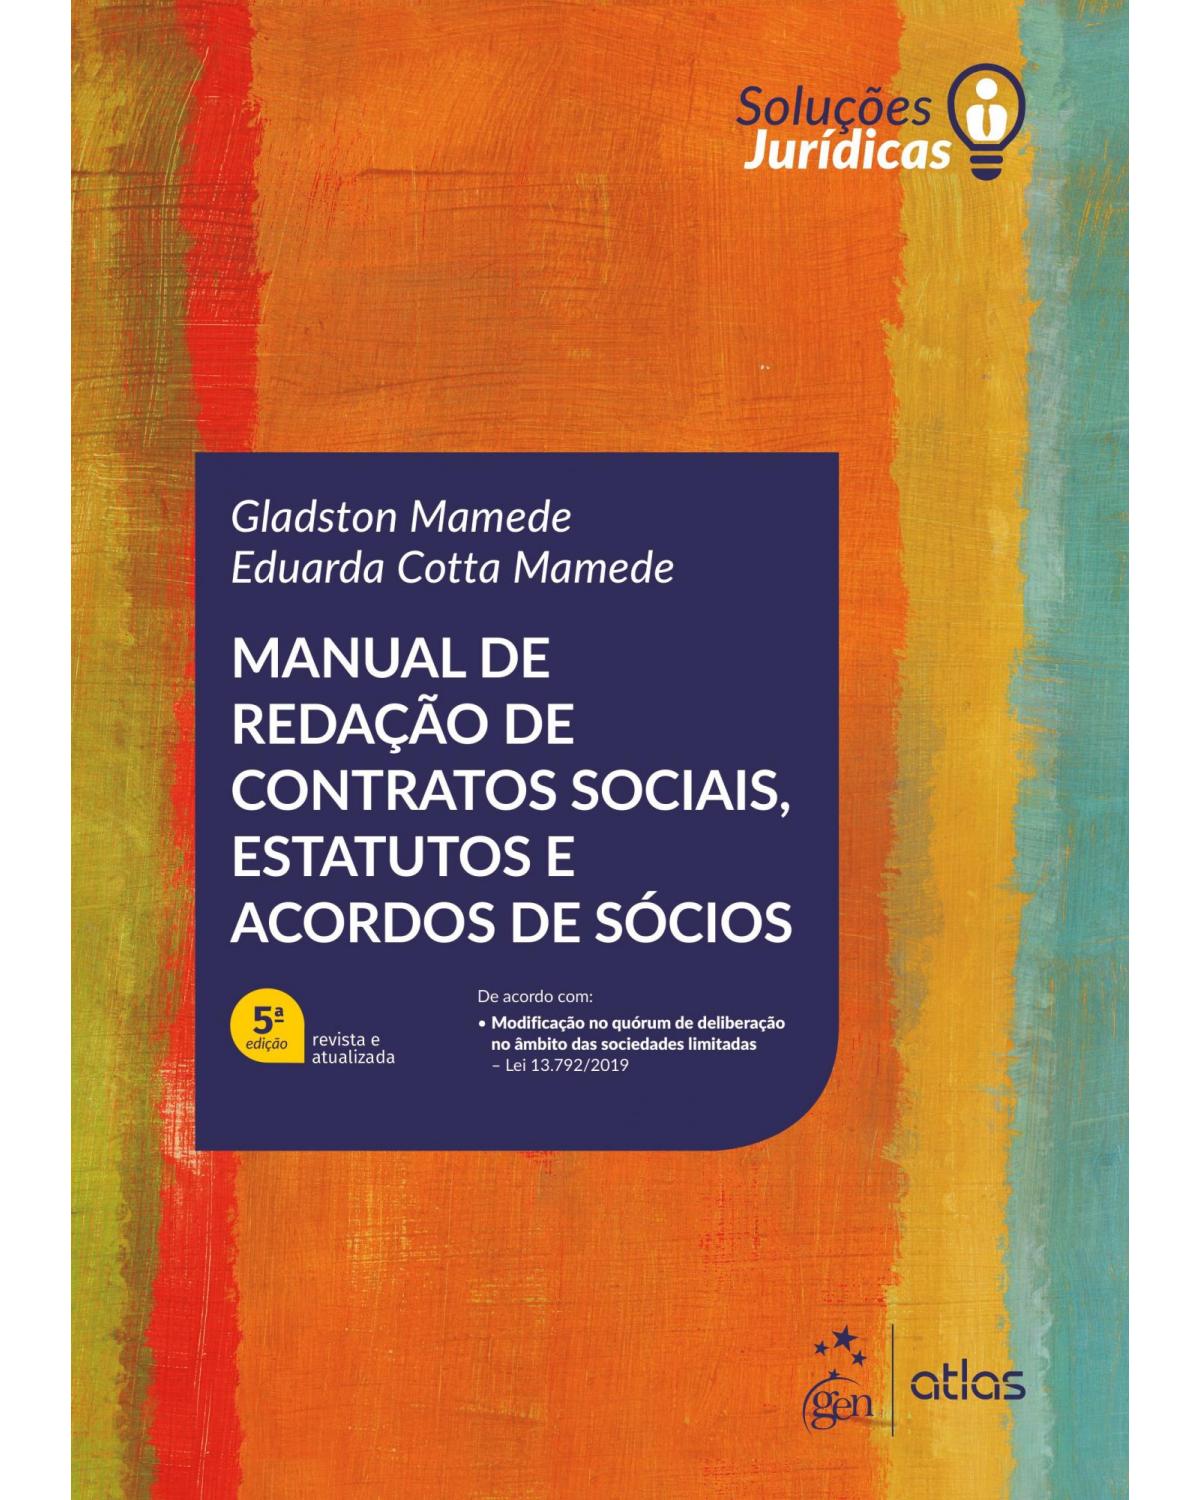 Manual de redação de contratos sociais, estatutos e acordos de sócios - 5ª Edição | 2019